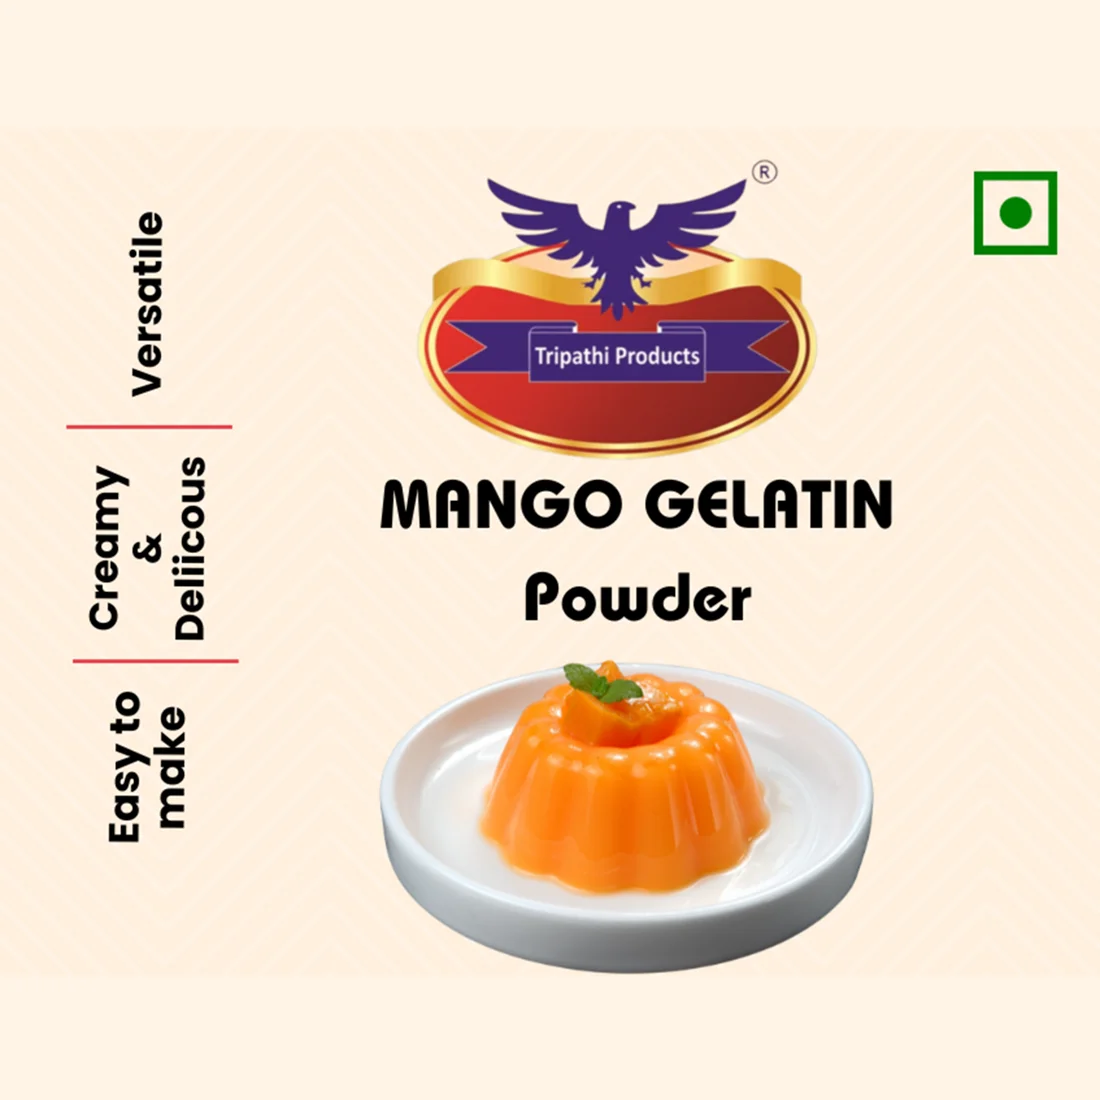 Mango flavoured Gelatin Powder